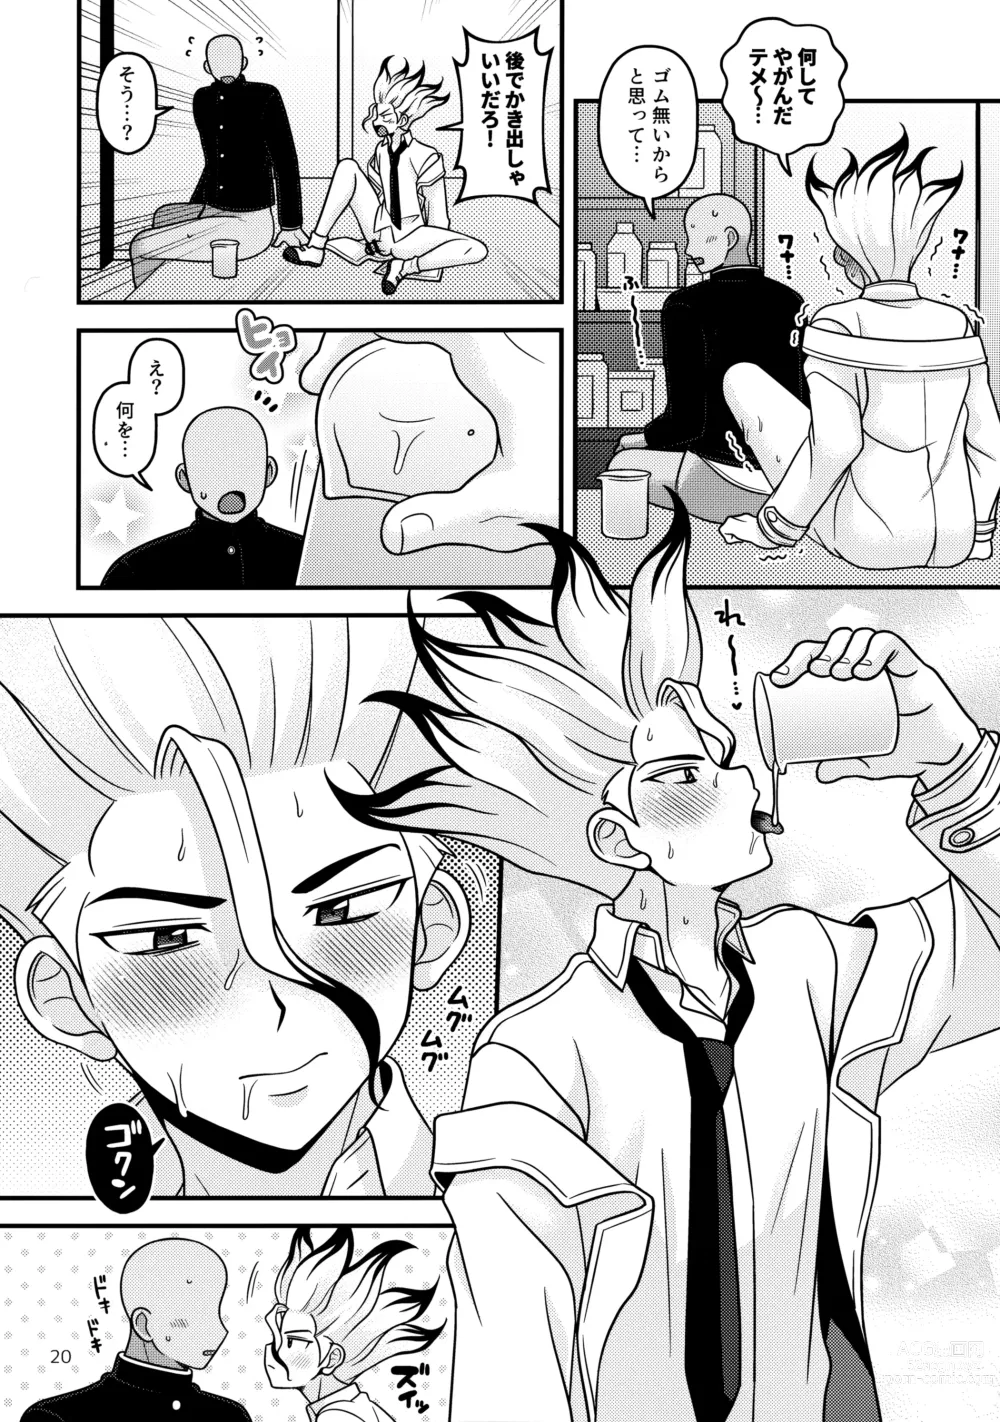 Page 19 of doujinshi Houkago no Daini Jikkenshitsu 2